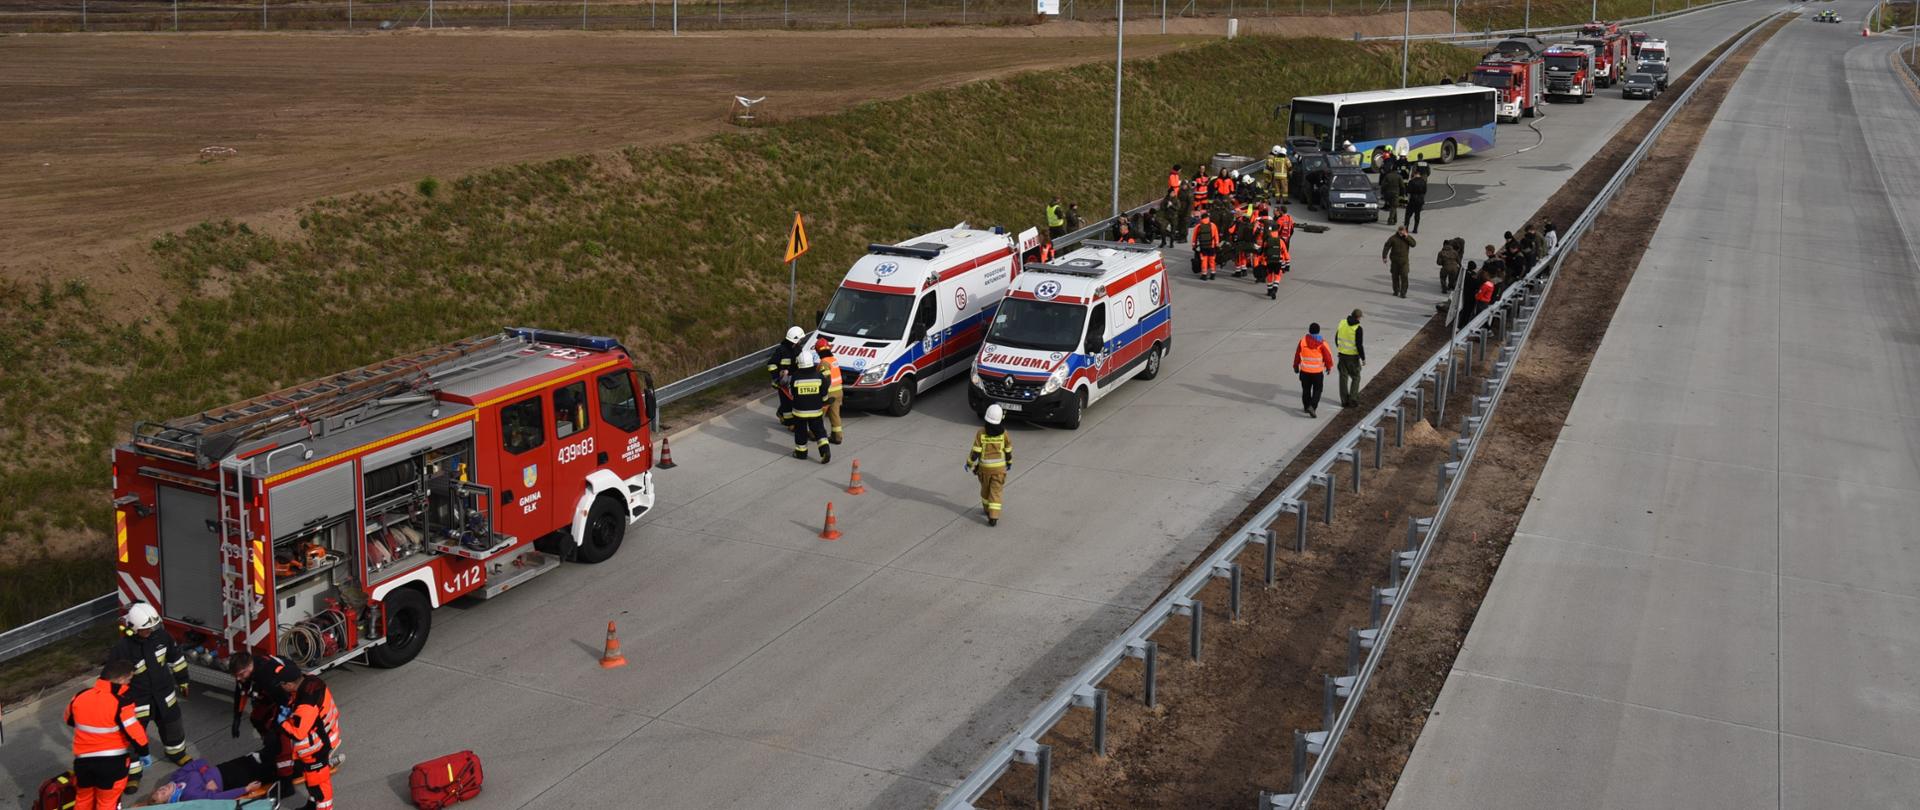 Pozorowany wypadek autokaru i samochodów osobowych. Wokół pojazdy pogotowia i straży pożarnej. Strażacy i ratownicy medyczni ćwiczą udzielanie pomocy poszkodowanym.